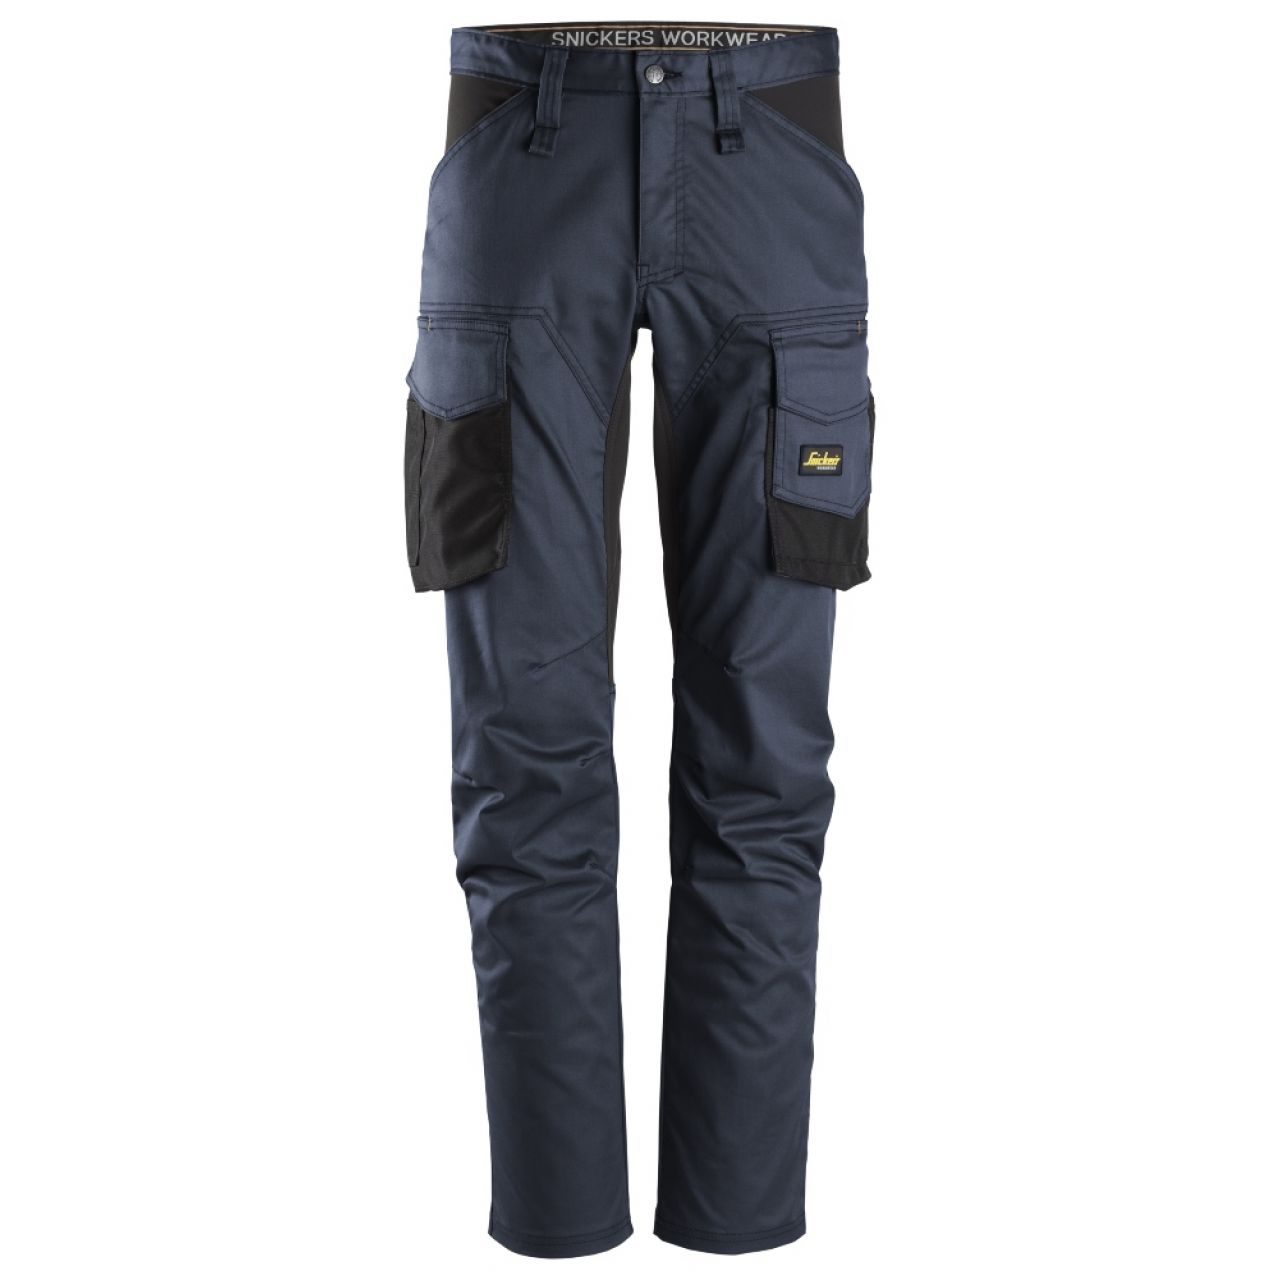 6803 Pantalones largos de trabajo elásticos sin bolsillos para las rodilleras AllroundWork azul marino-negro talla 48